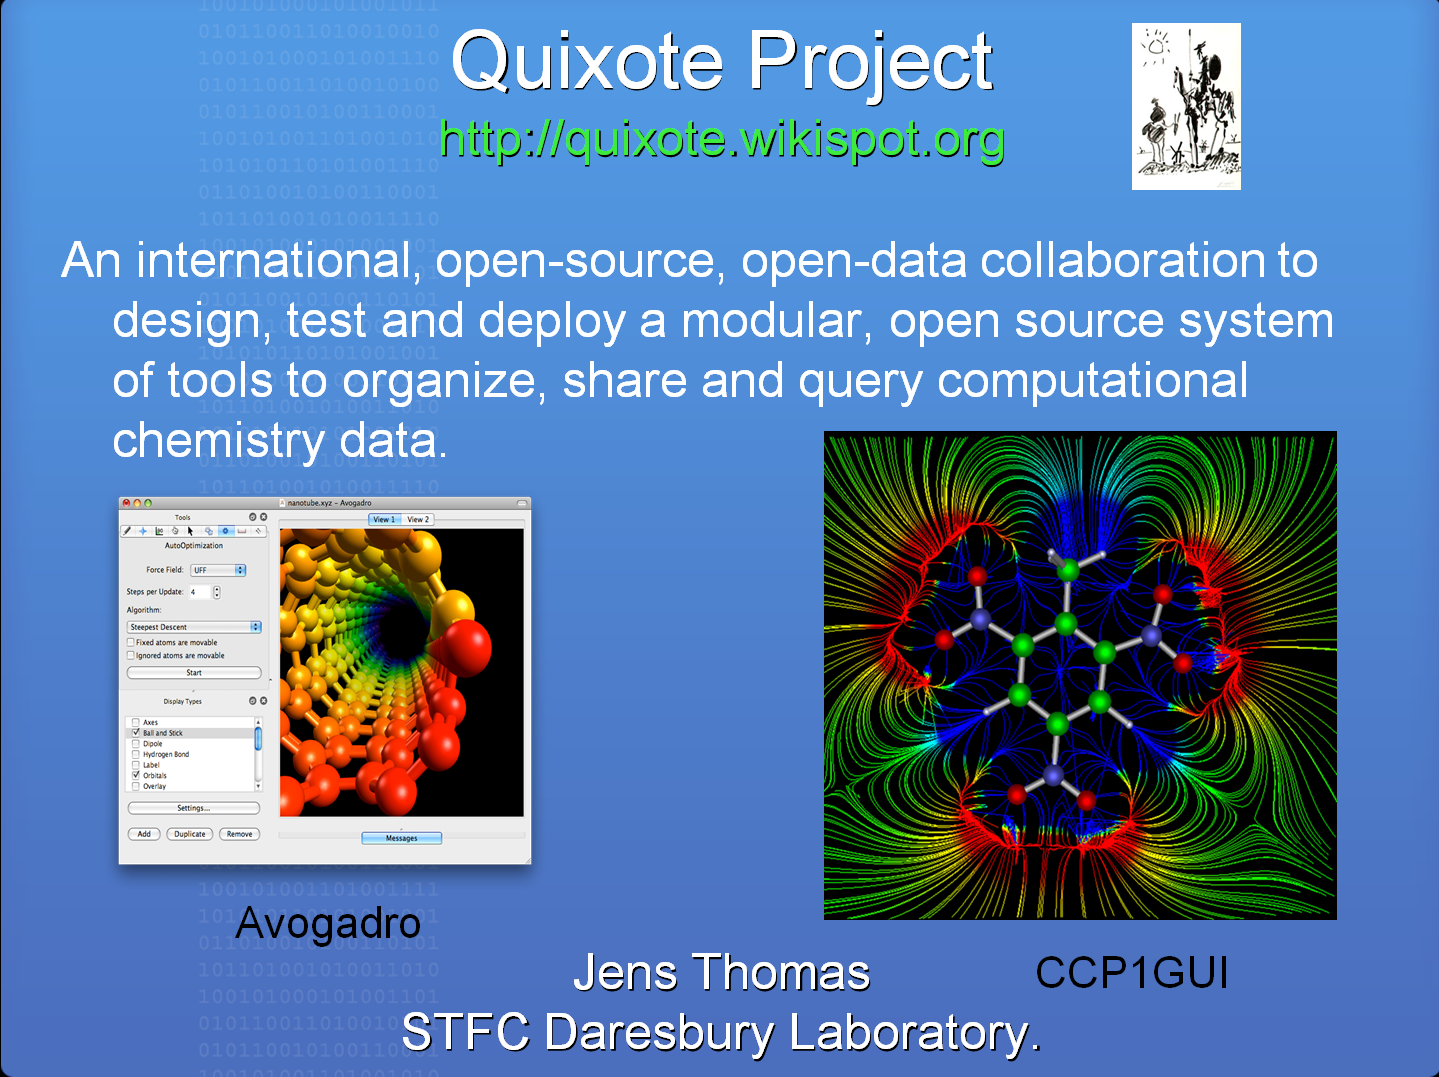 First slide of Jens Thomas' rapid slide presentation